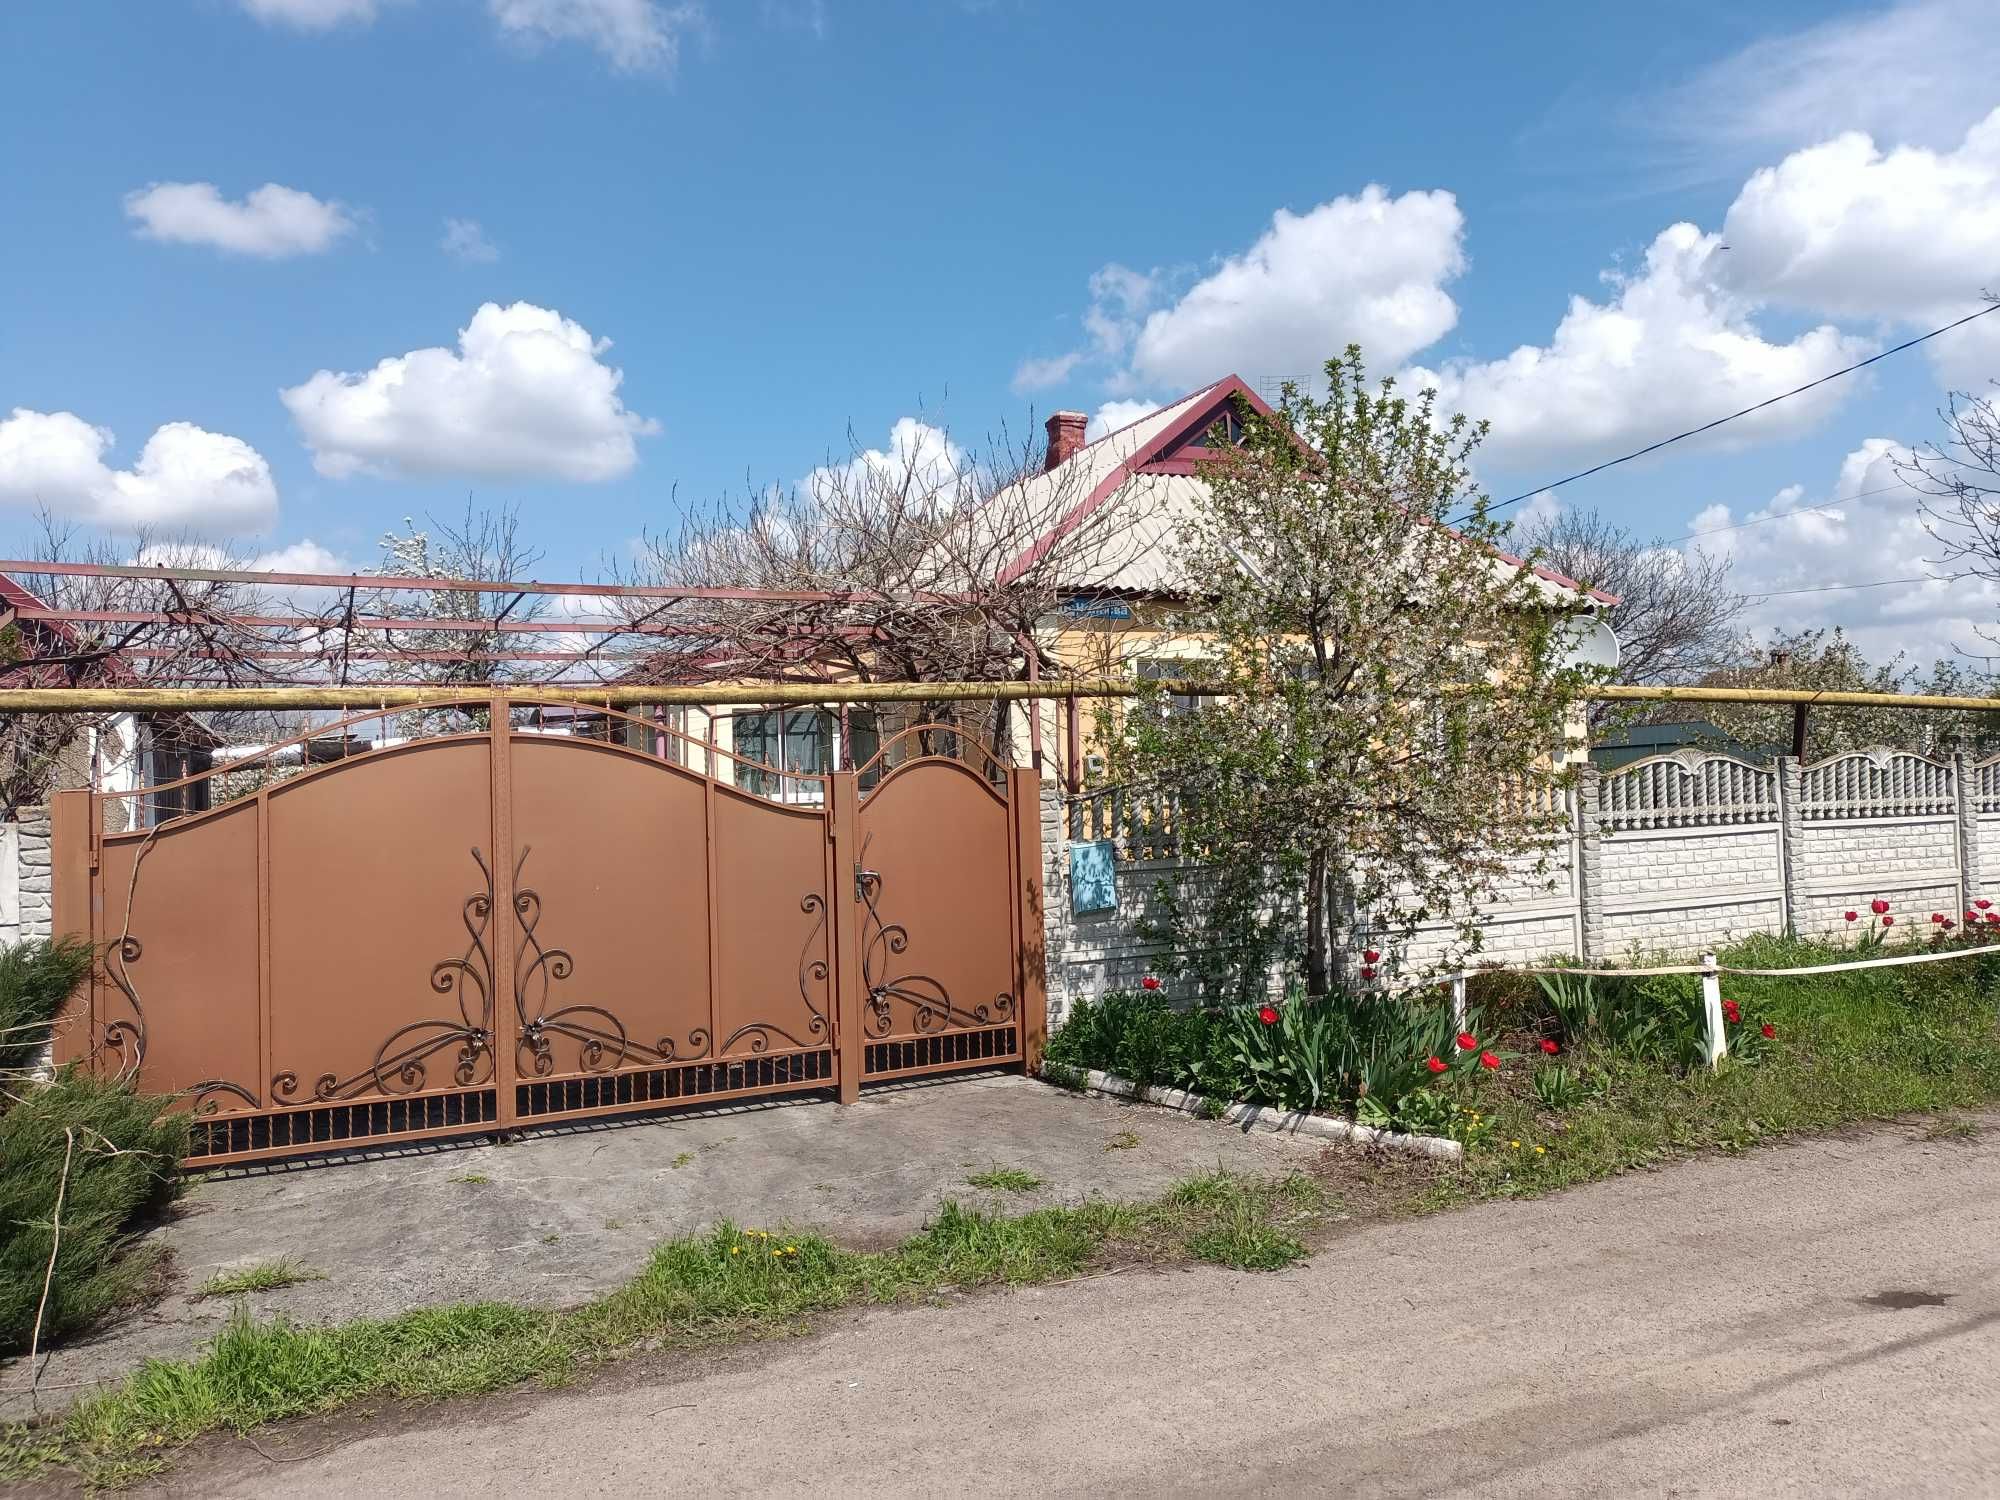 Продається добротний будинок у селі Михайлівка Апостолівського району